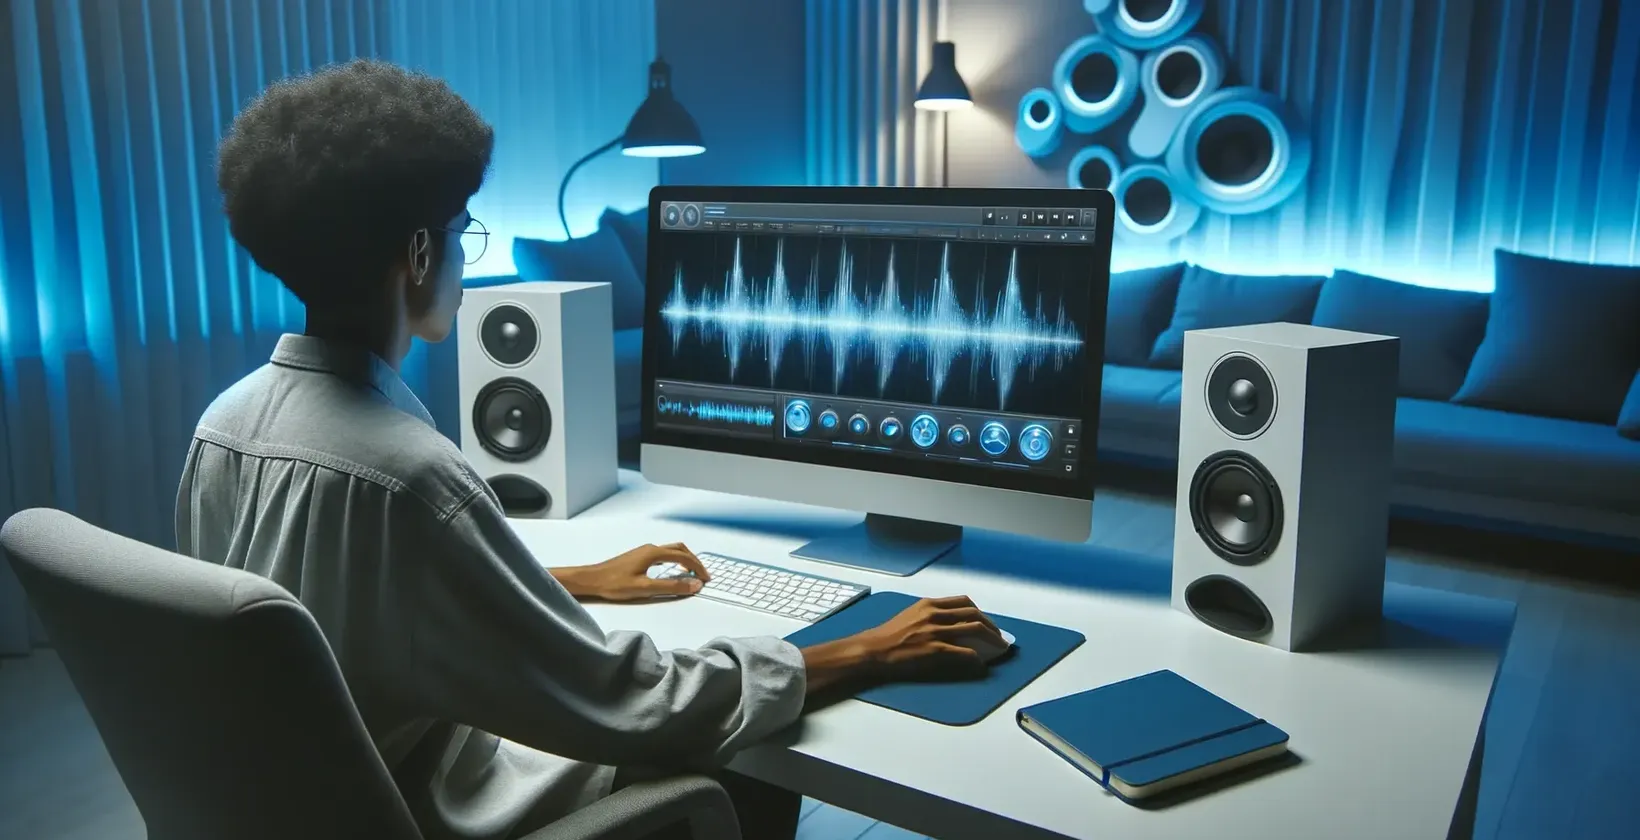 Inimene töötab arvutis, lisades teksti ülesvõetud videole kaasaegses stuudiokeskkonnas koos kõlaritega